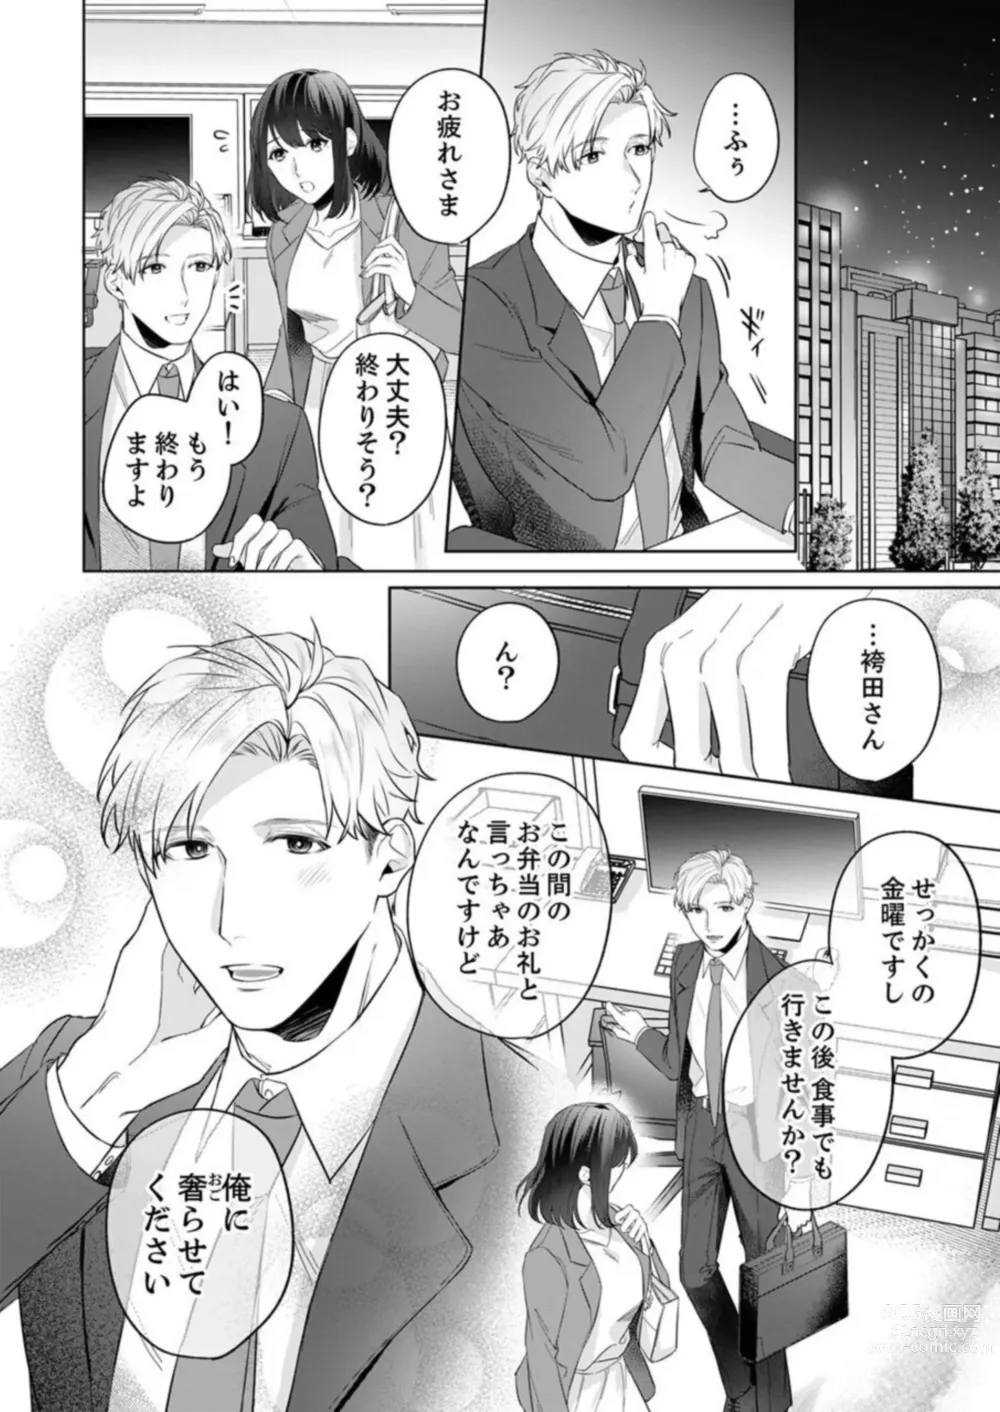 Page 18 of manga Oshi ni no Buka no Koshikudake Kisu 〜 Desuku no ue de Torotoro ni Nurete 1-2